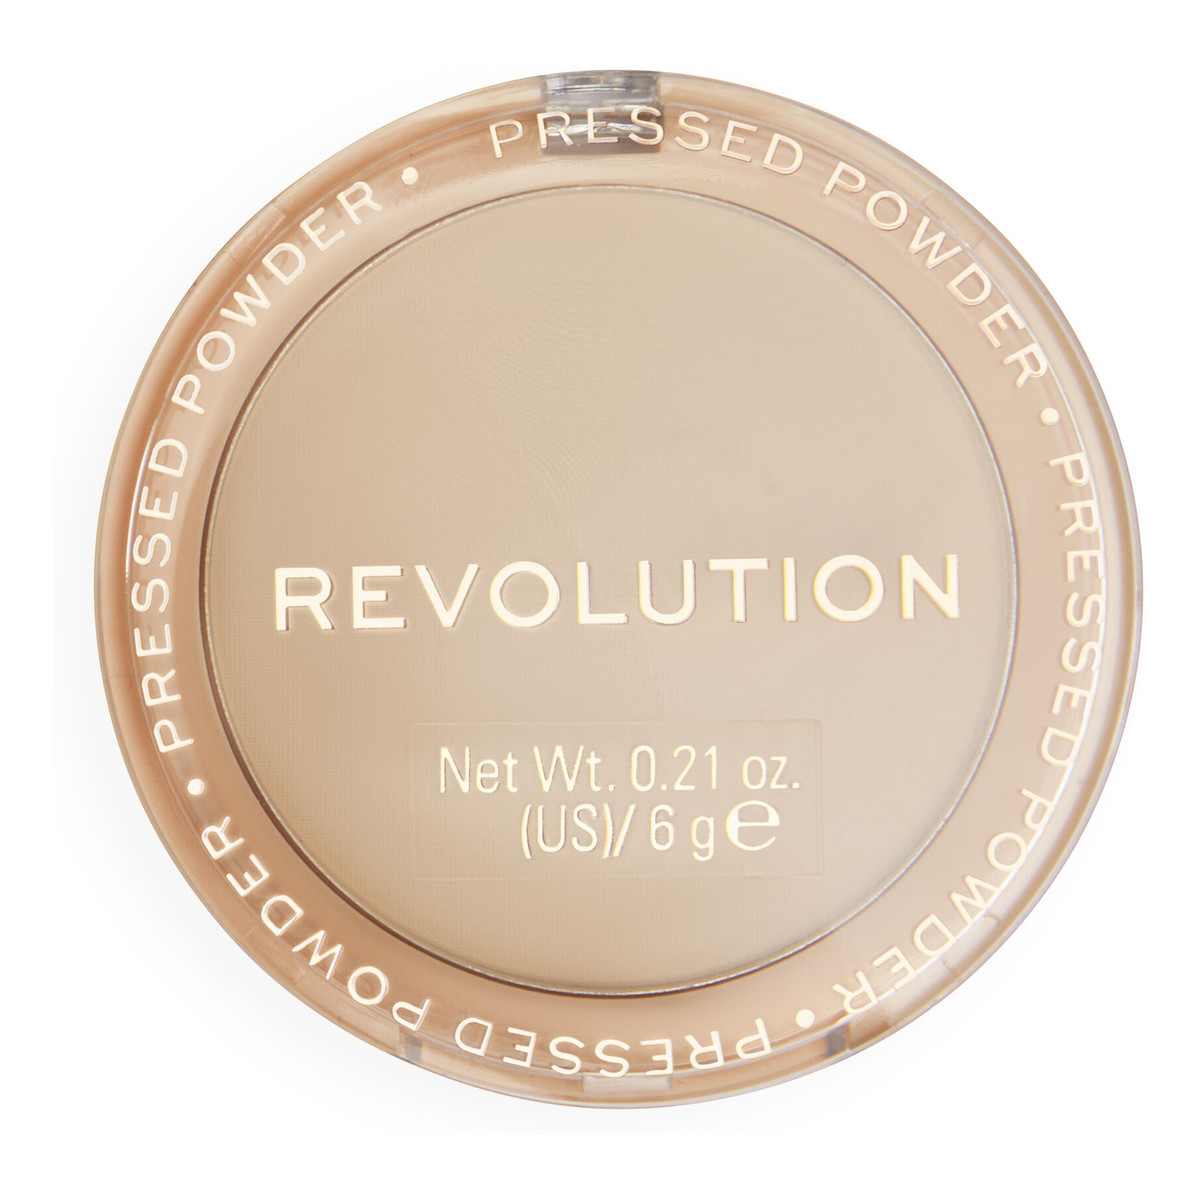 Makeup Revolution Reloaded Puder prasowany 6g